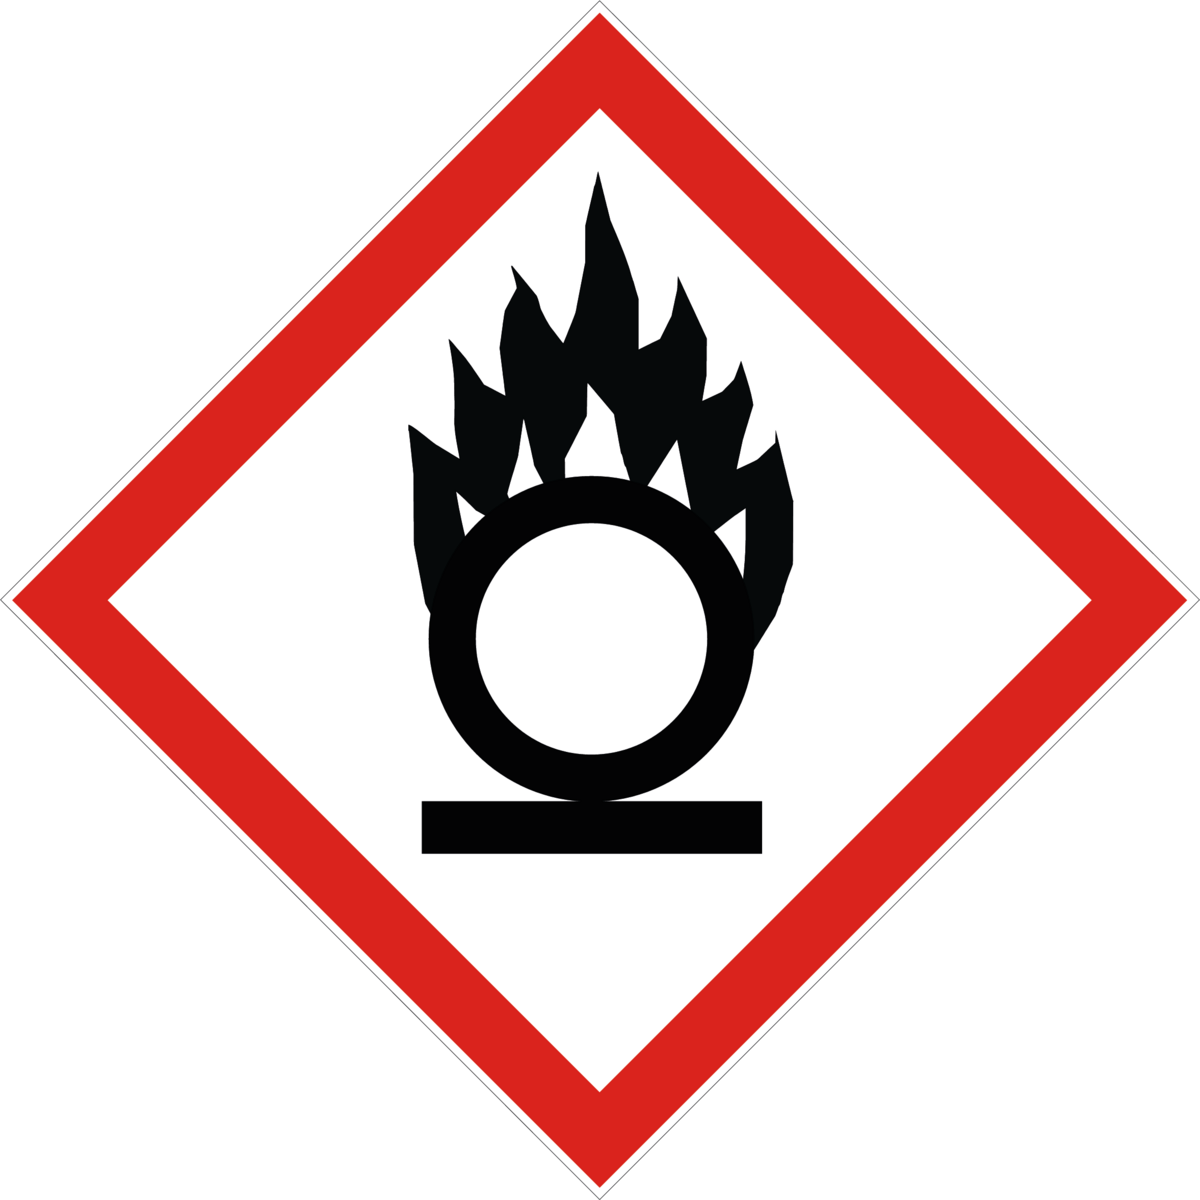 Gefahr oder Achtung: Brandfrdernd